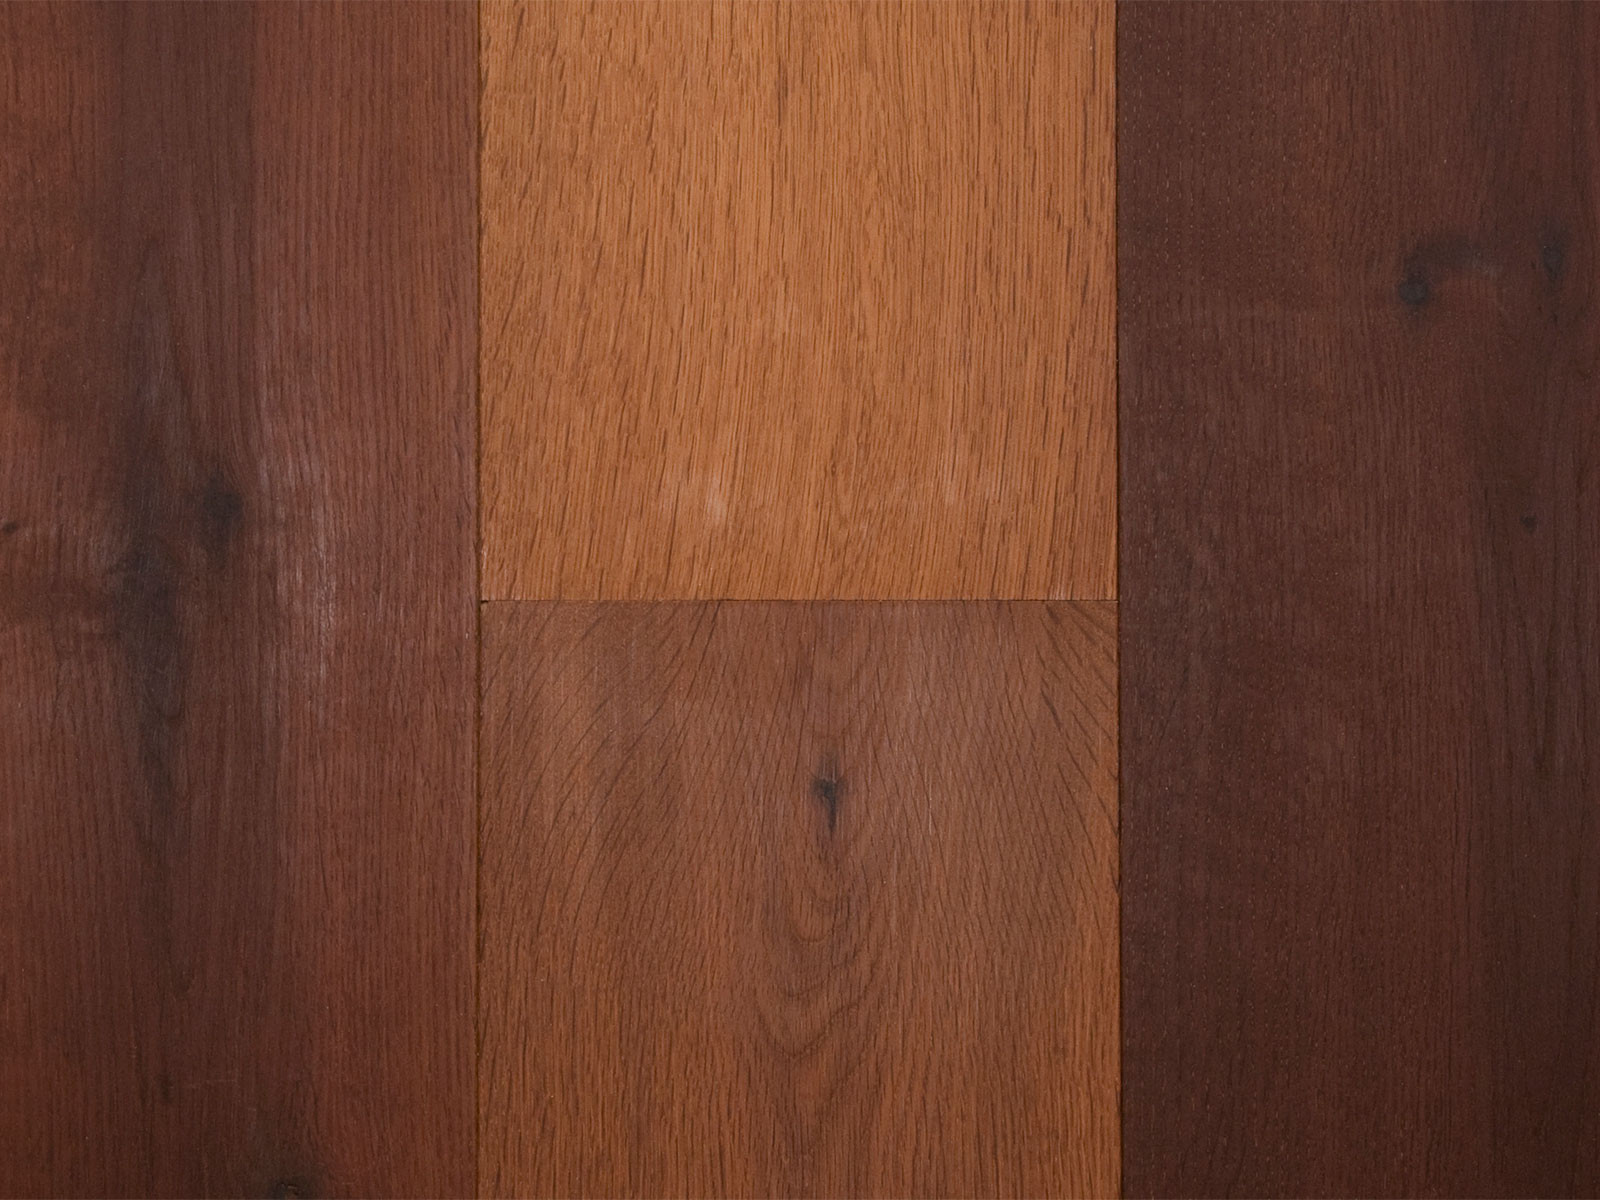 27 Stylish Buy Unfinished Hardwood Flooring 2022 free download buy unfinished hardwood flooring of duchateau hardwood flooring houston tx discount engineered wood for savoy european oak